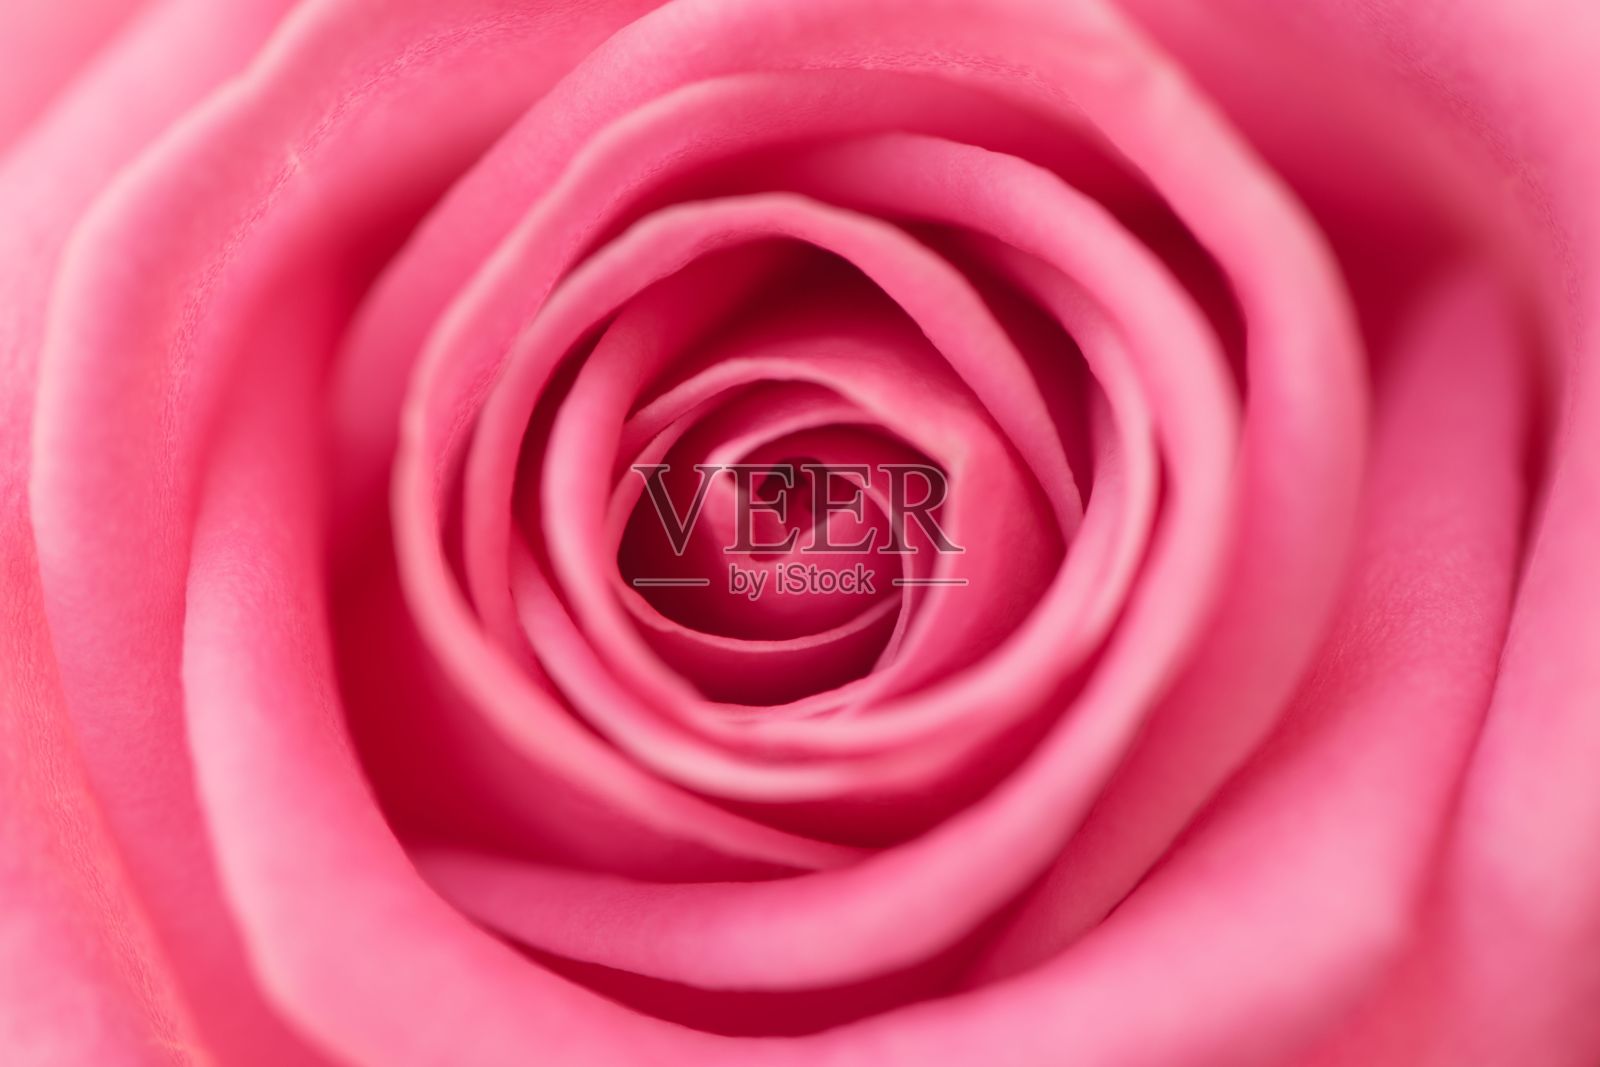 一朵盛开的粉红色玫瑰的详细特写照片摄影图片